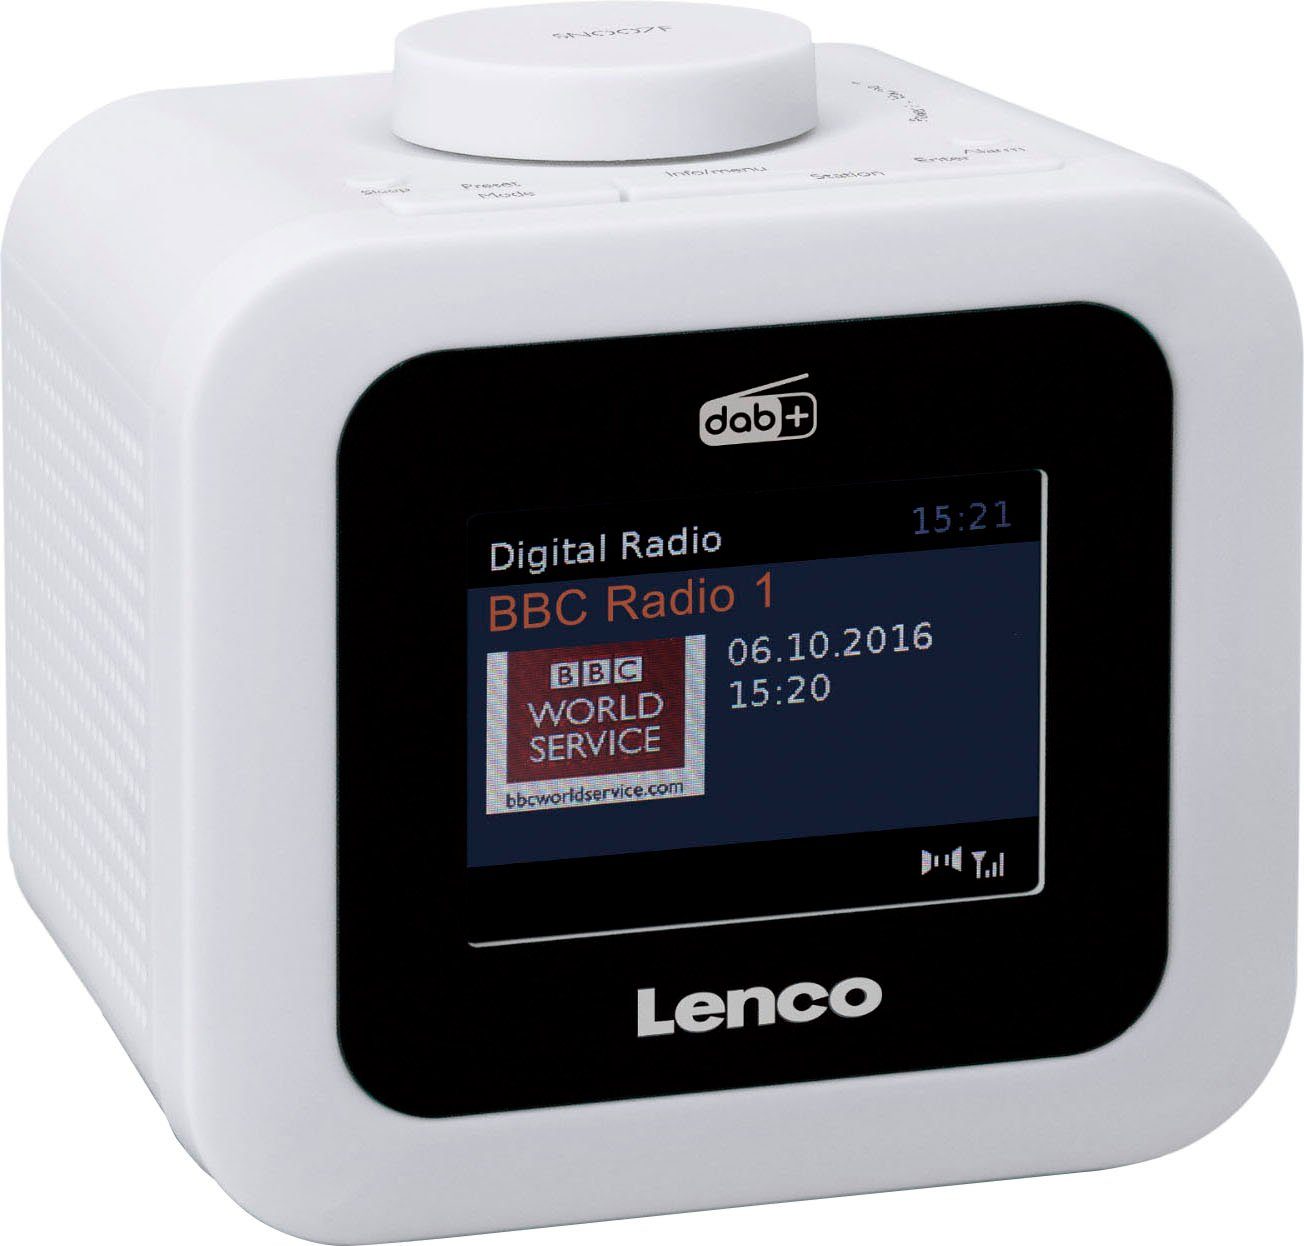 Lenco Radiowecker CR-620 weiß